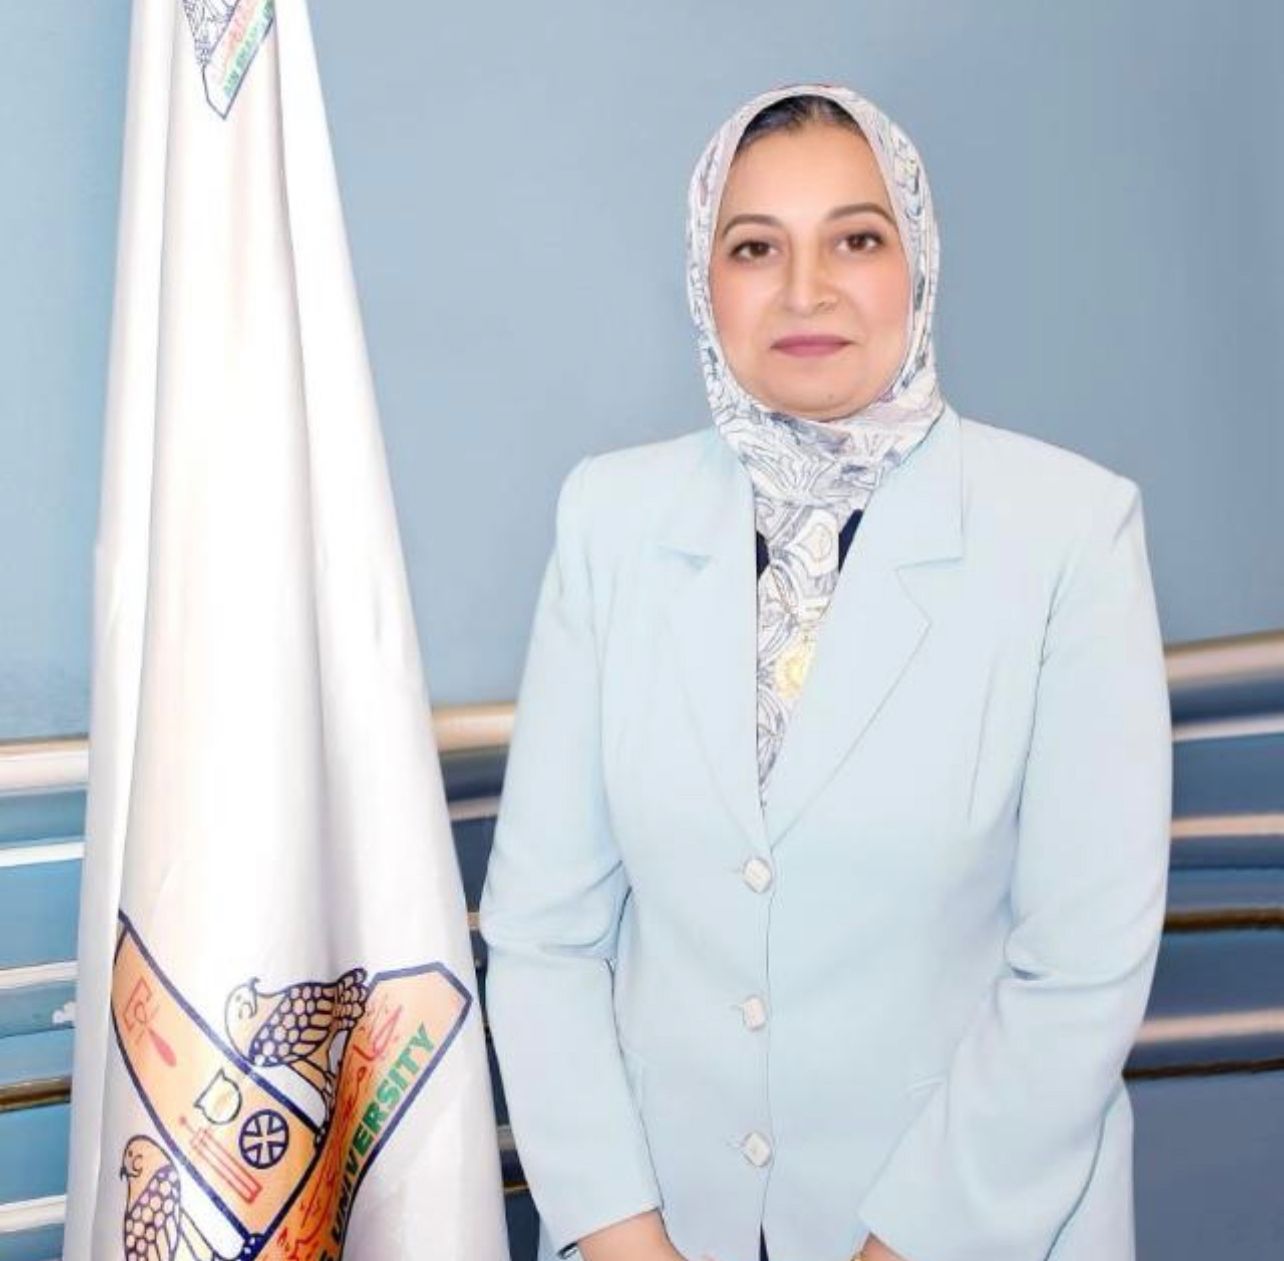 الدكتورة غادة فاروق القائم بعمل رئيس جامعة عين شمس